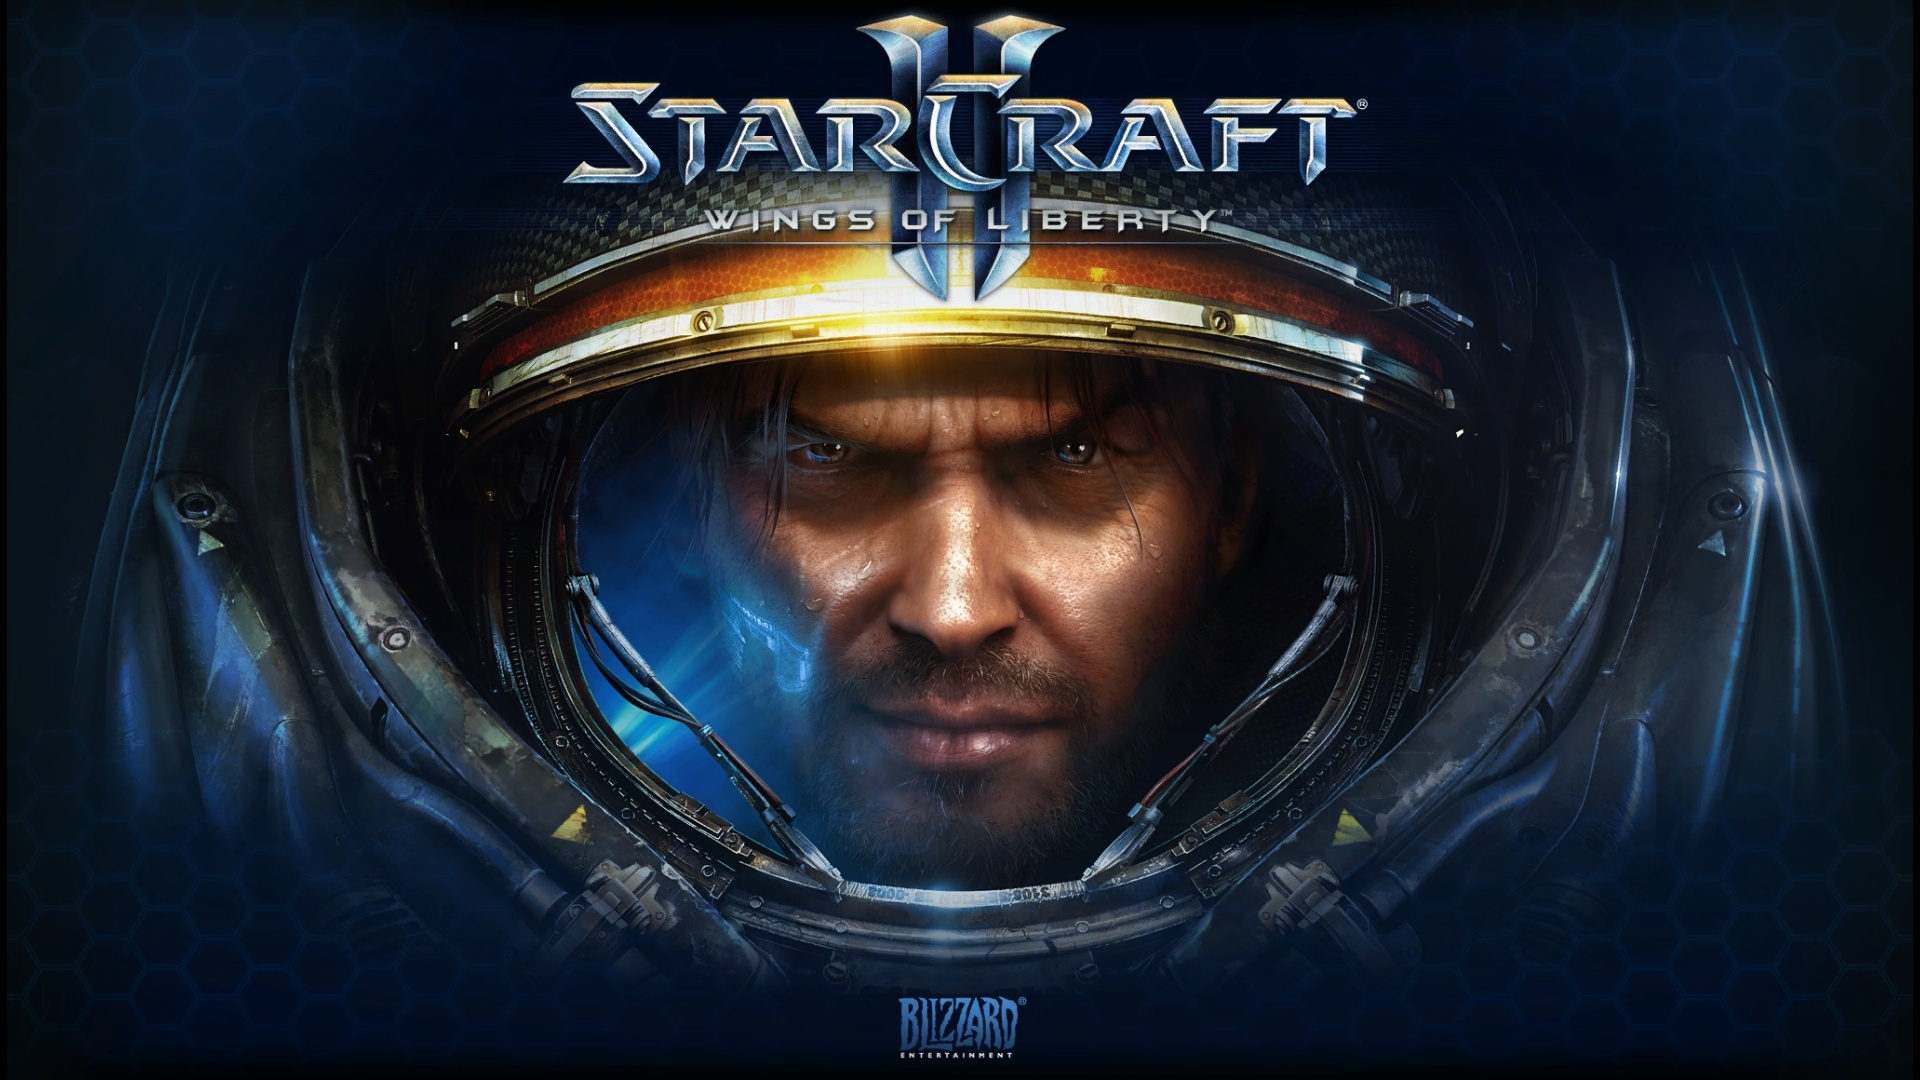 HD Starcraft 2 Games War Wallpaper 1080p Full Size